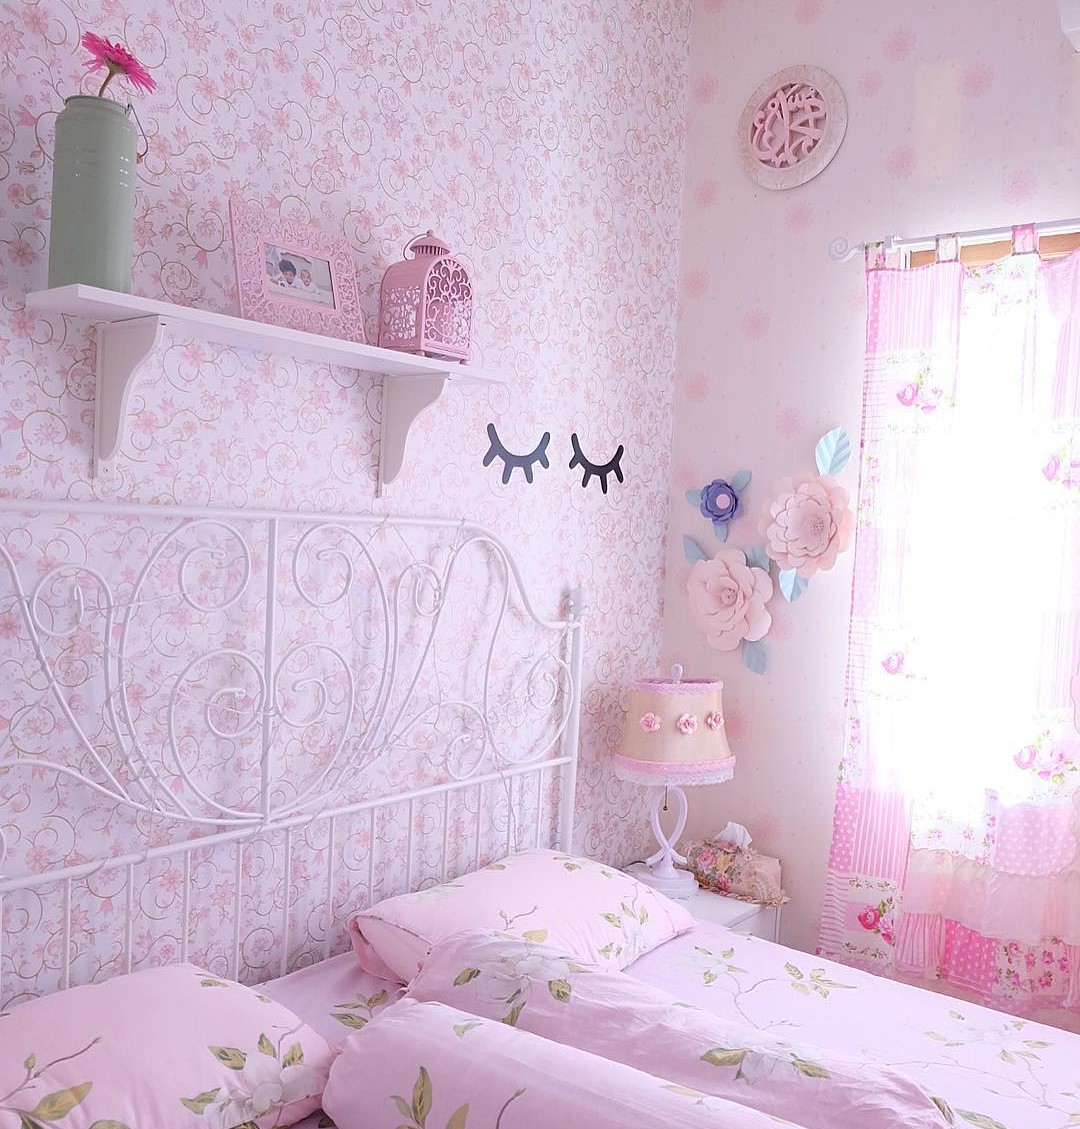 Wallpaper Dinding Kamar Tidur Anak Perempuan Sobat Interior Rumah